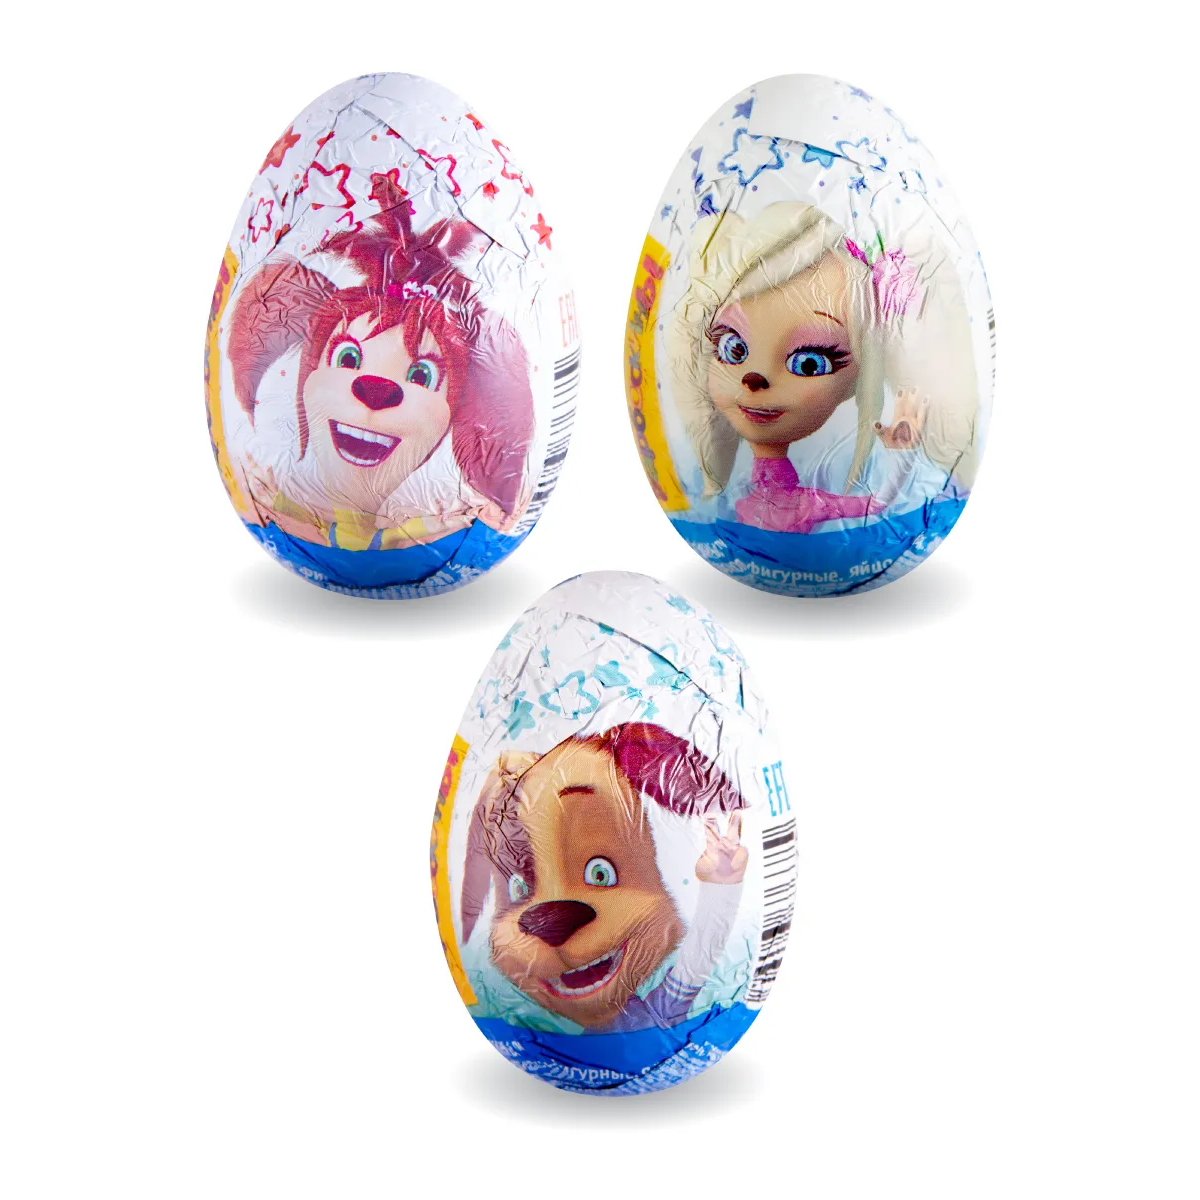 Шоколадное яйцо Сладкая сказка Барбоскины, с игрушкой, 20 г, в ассортименте яйцо шоколадное mega secret с игрушкой 20 г